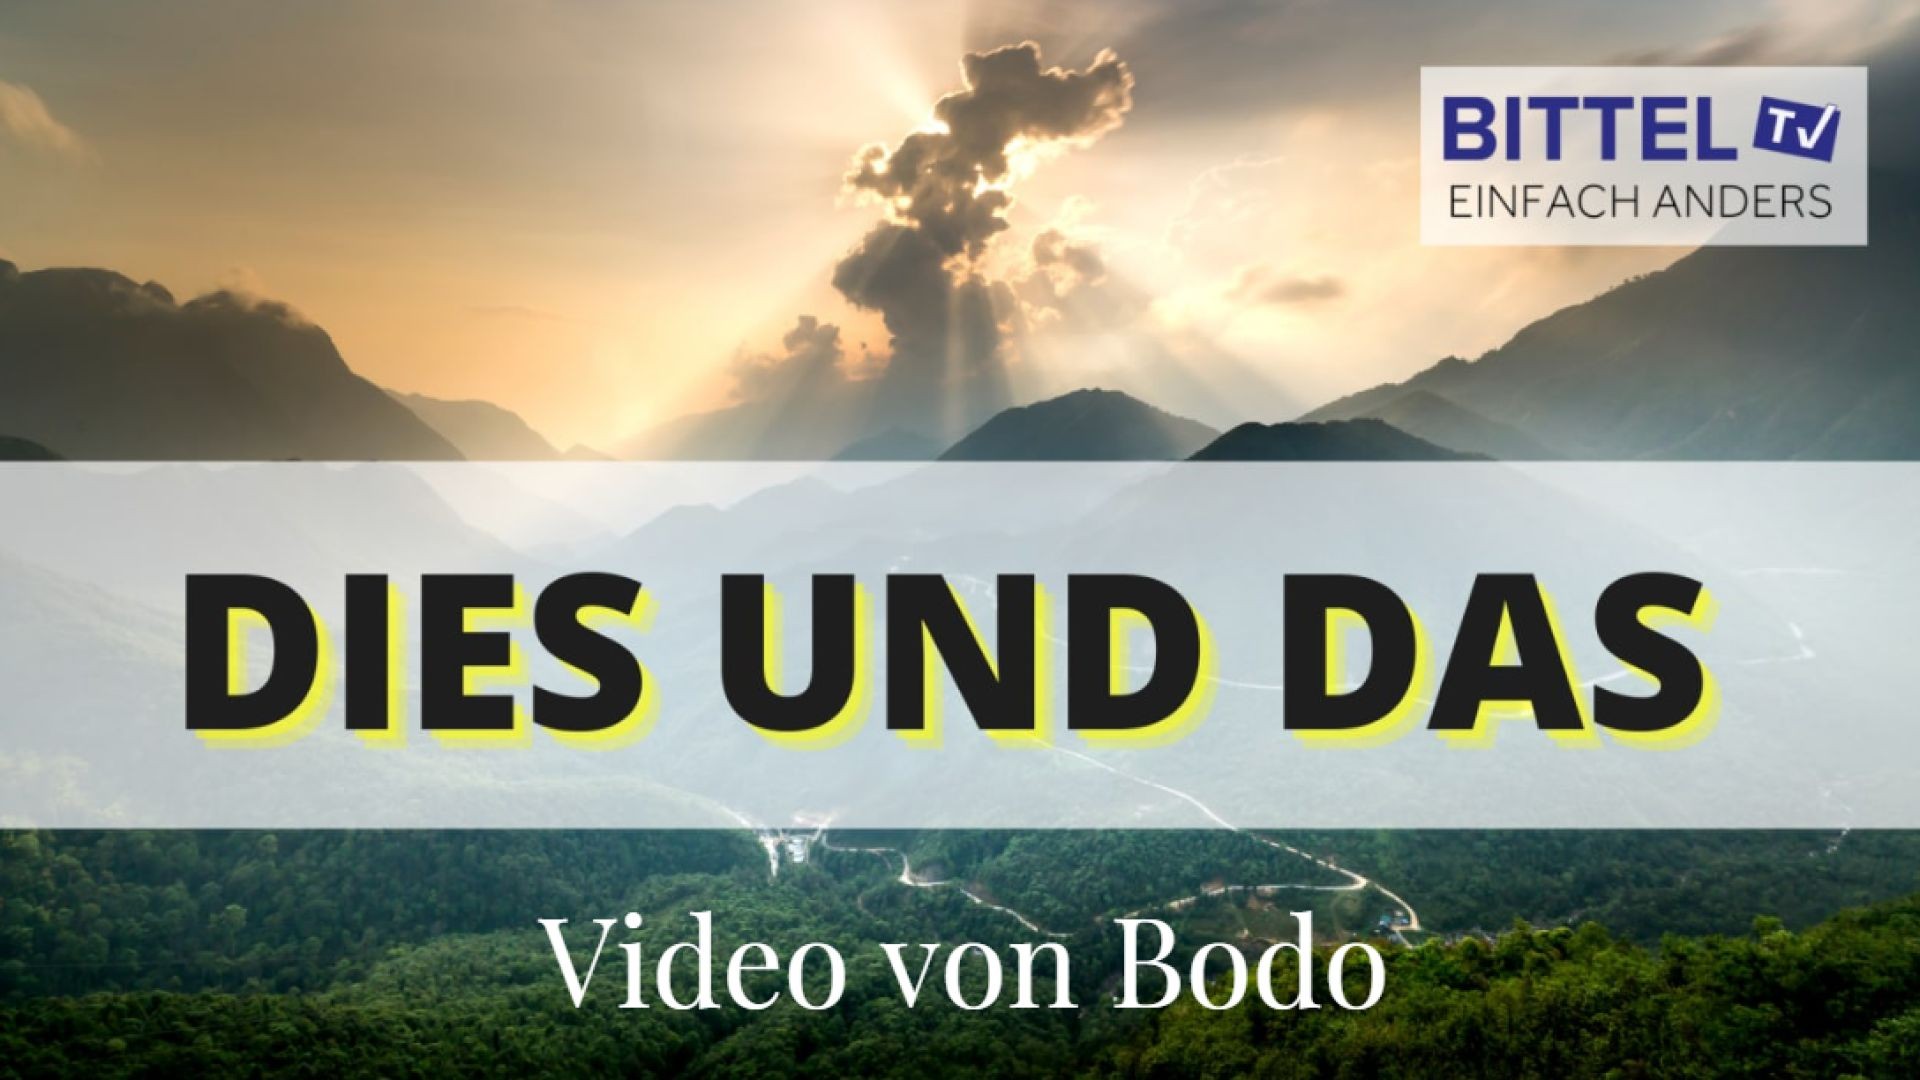 Video von Bodo 02.10.20